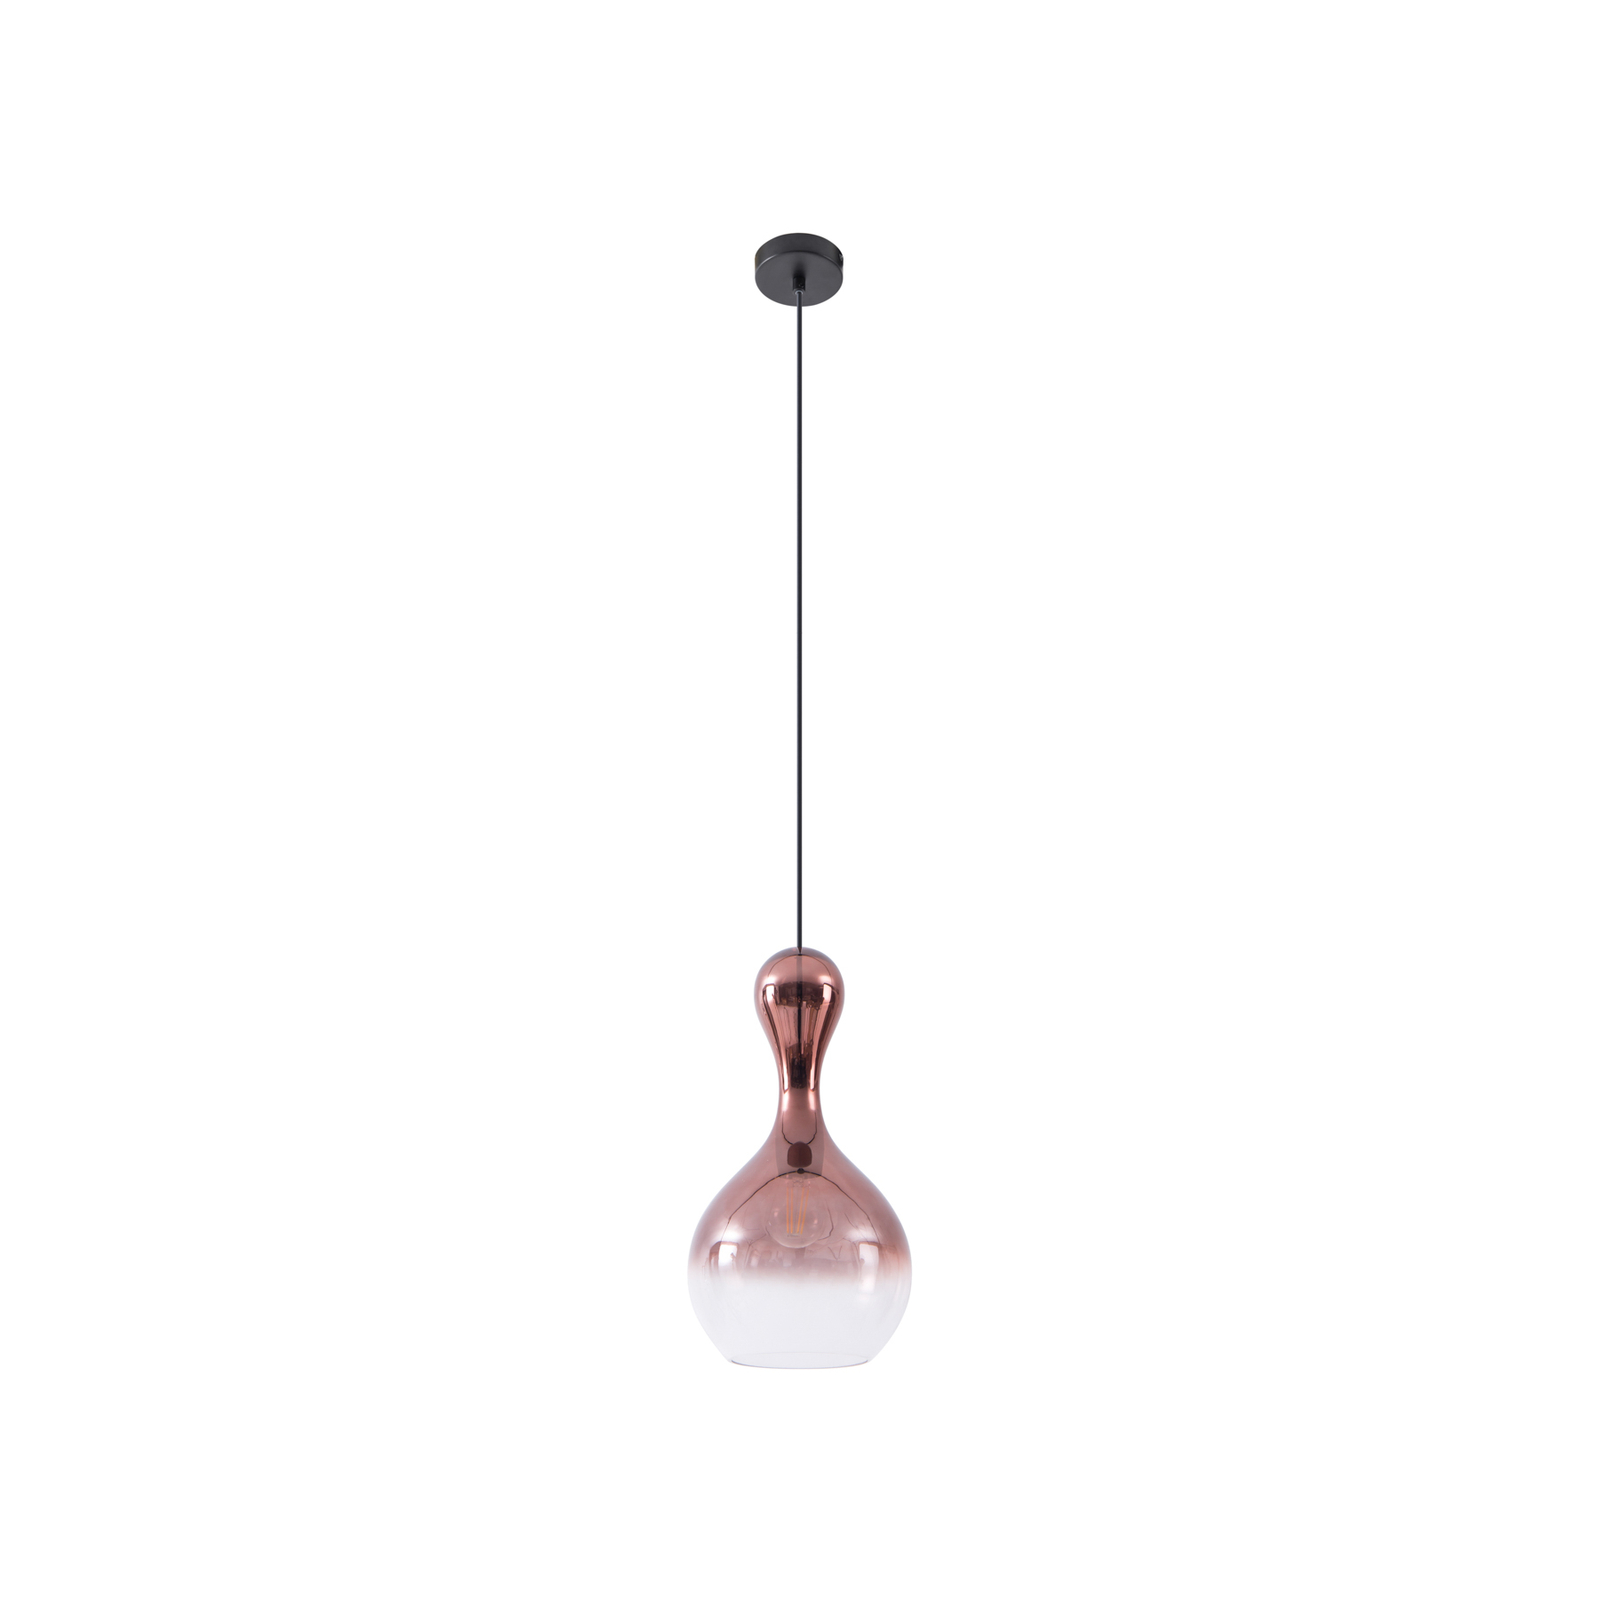 Lucande lámpara colgante Lyrisa, 1 luz, color cobre, cristal, 22cm